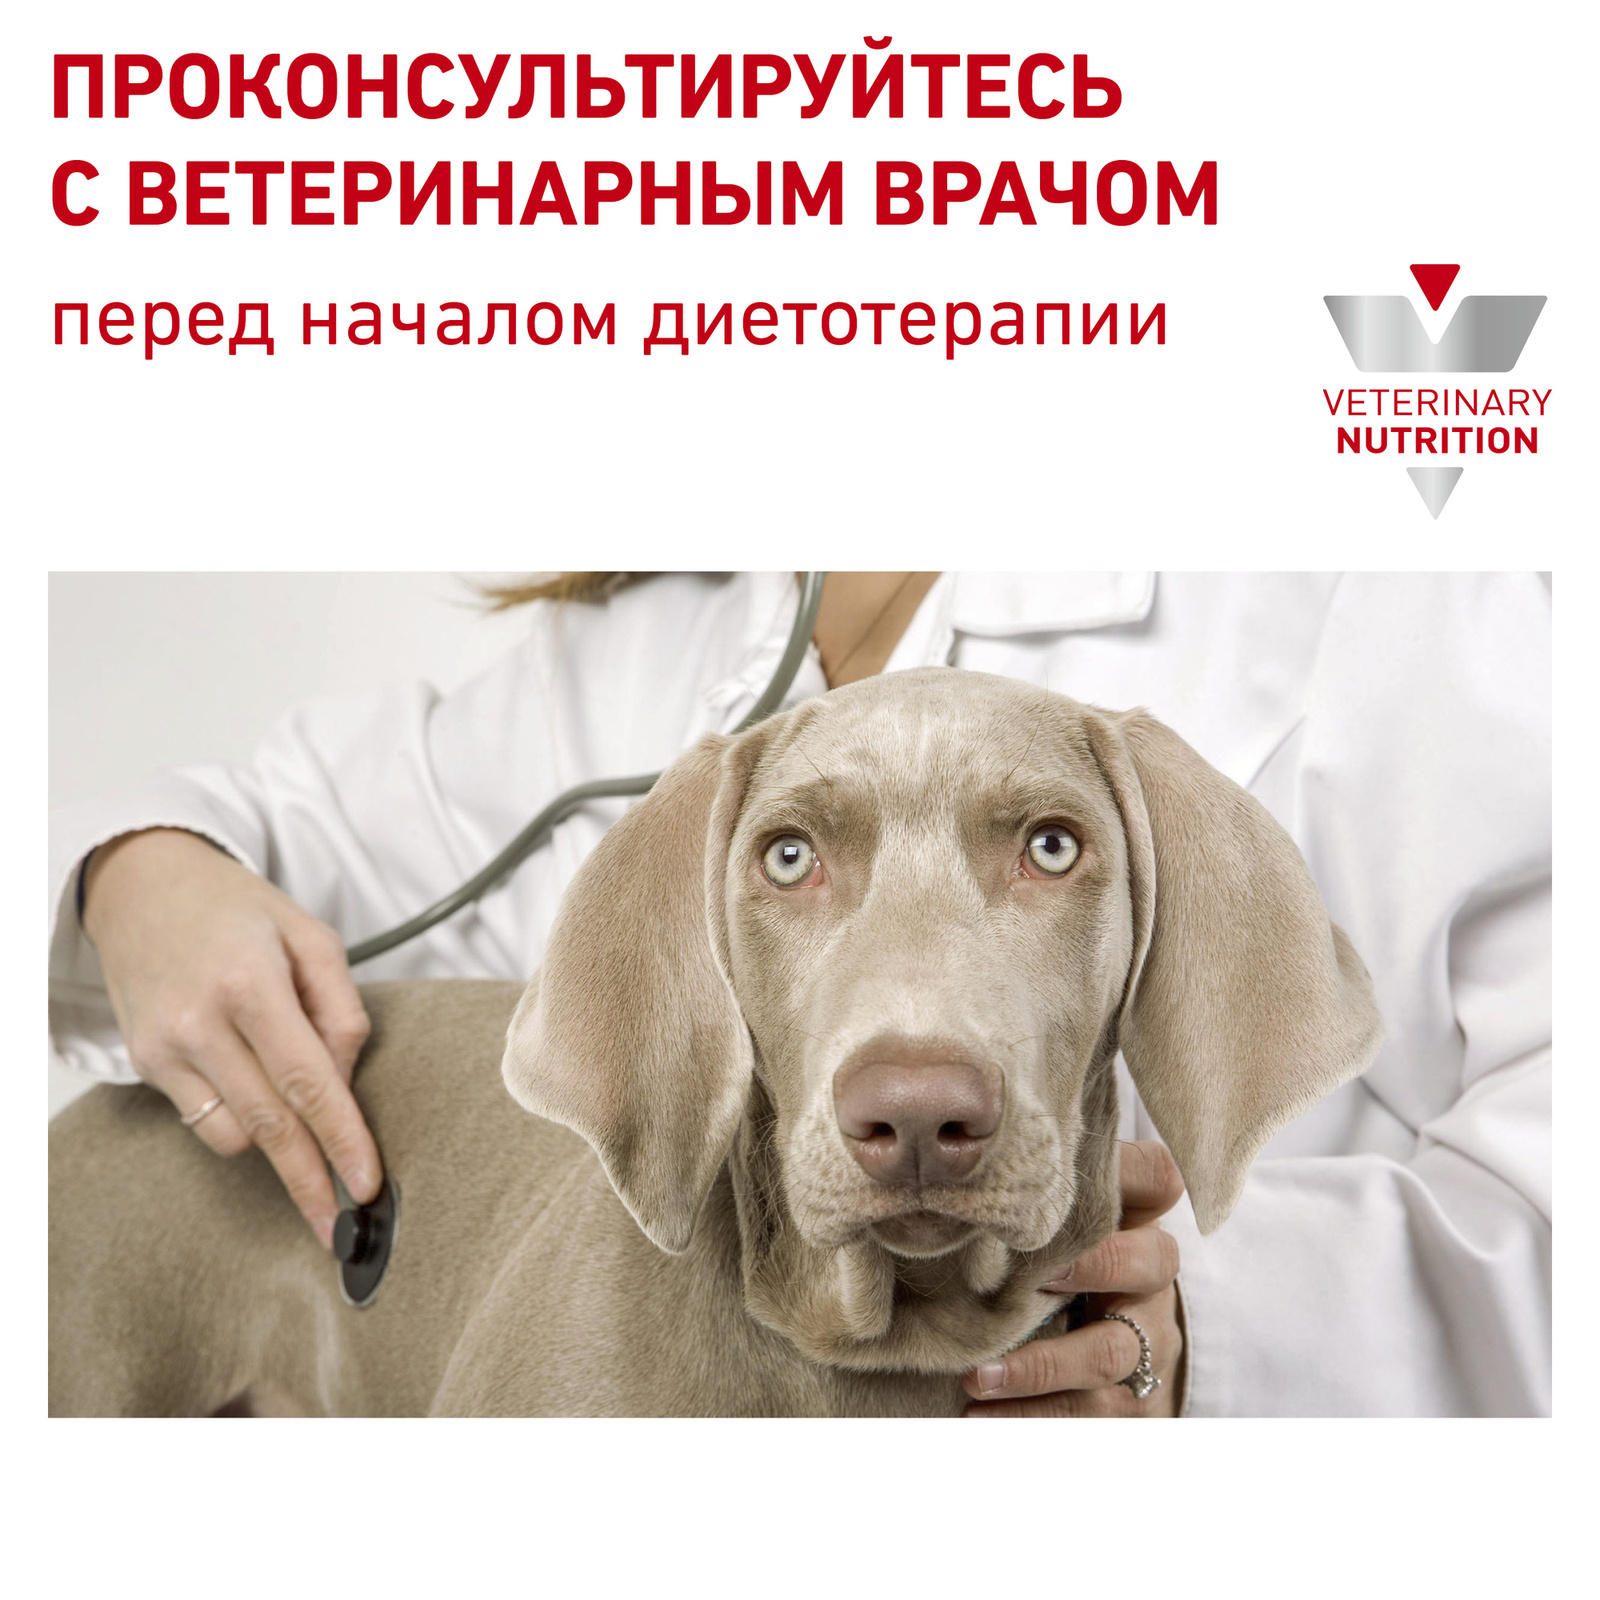 полнорационный диетический, для взрослых собак, рекомендуемый для снижения веса (1,5 кг) Royal Canin (вет.корма) полнорационный диетический, для взрослых собак, рекомендуемый для снижения веса (1,5 кг) - фото 9